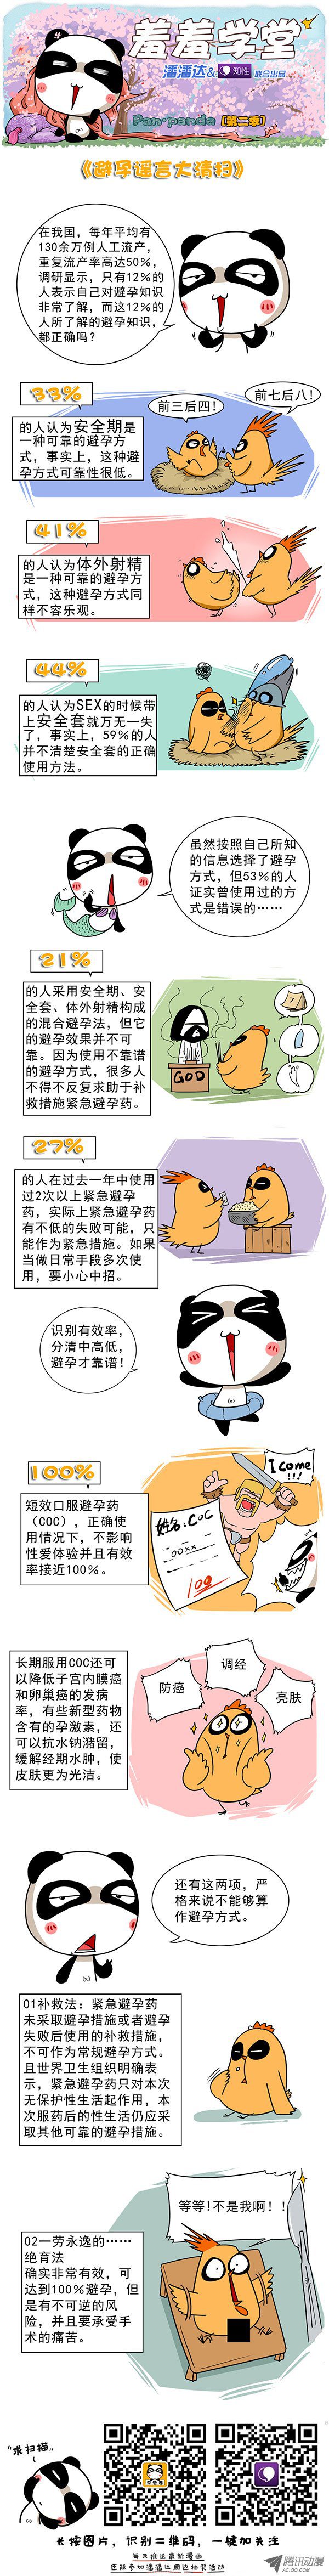 《屌丝潘潘达第二季》漫画 避孕谣言大清扫